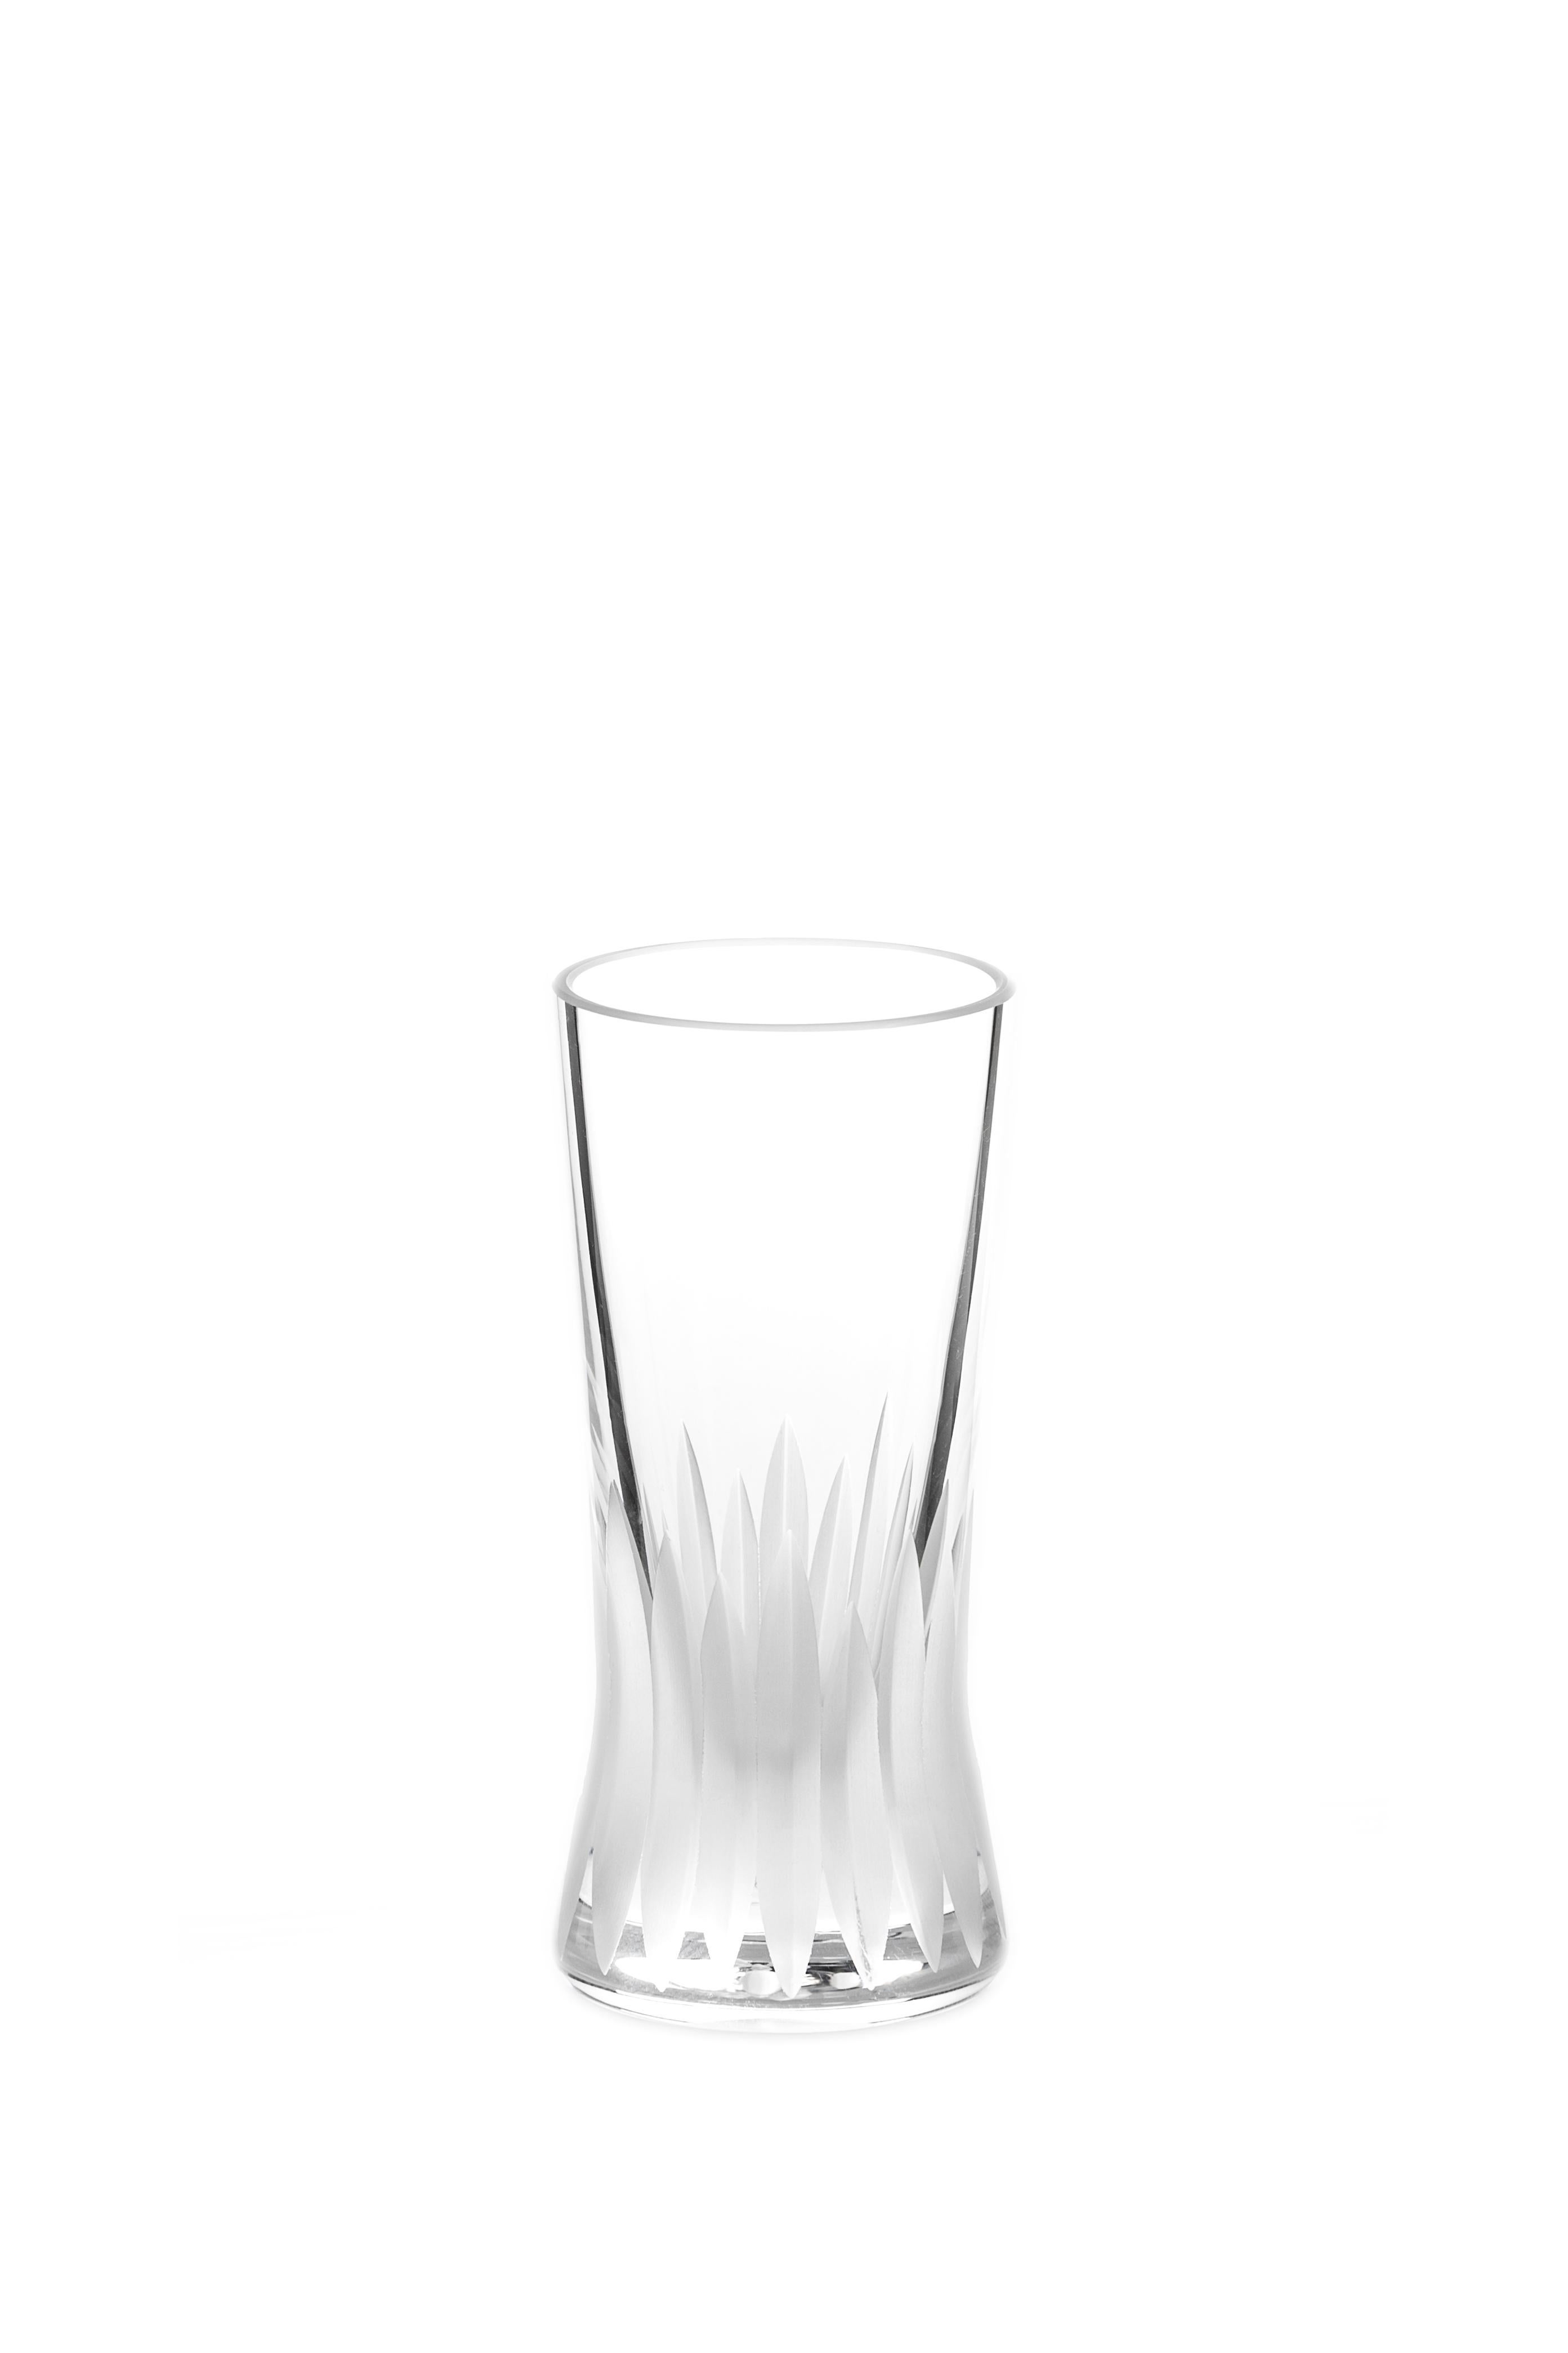 Martino Gamper Handgefertigtes irisches Kristall-Schuhglas 'Cuttings' Serie 'Cuttings' 4er-Set (Geschliffenes Glas) im Angebot